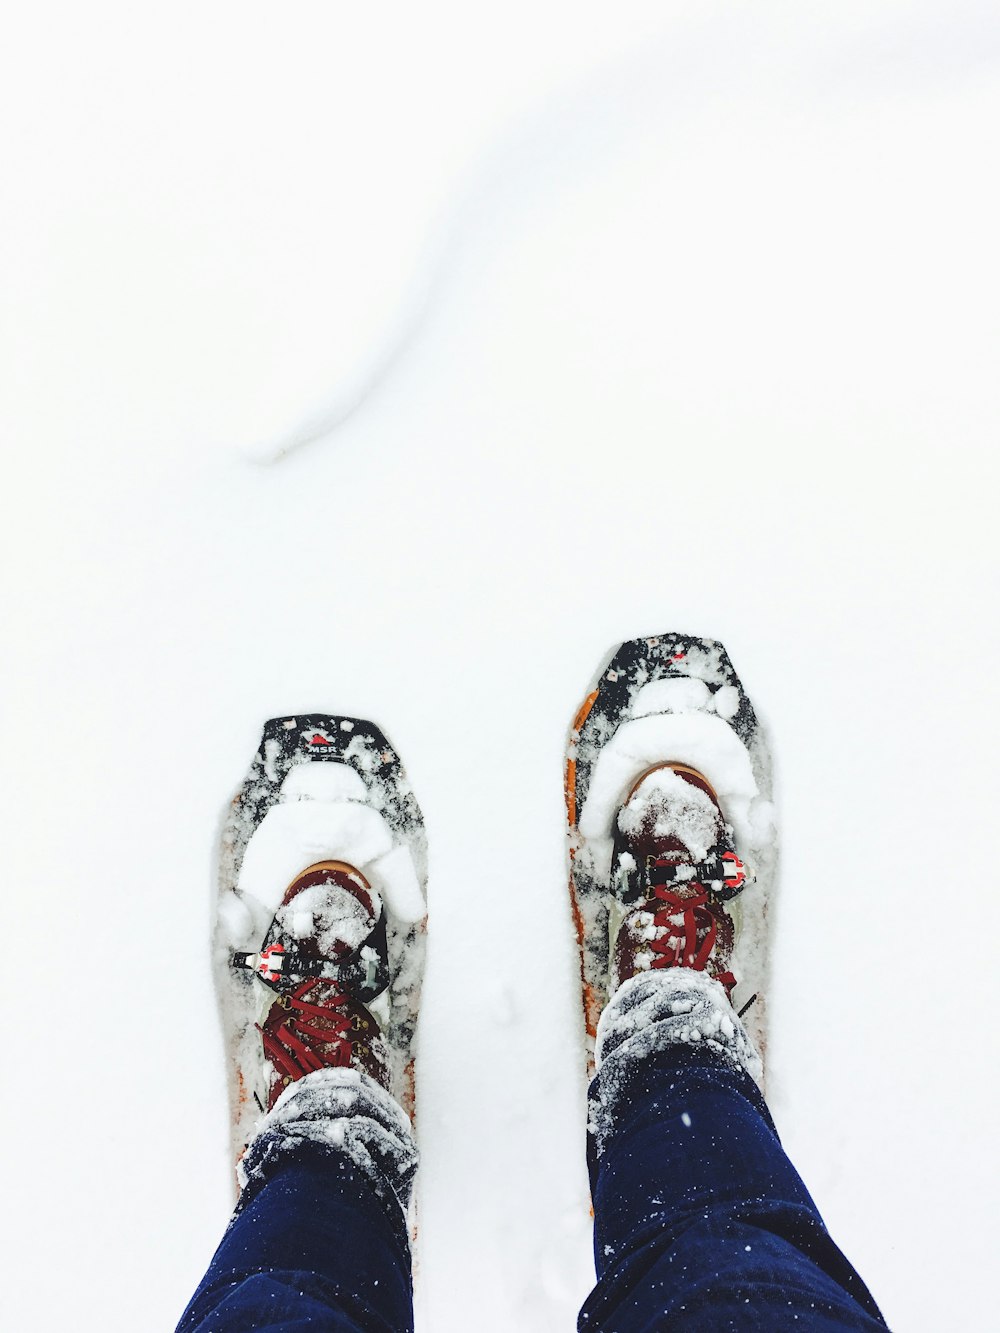 ブルージーンズを履いた人が雪の上に立つ